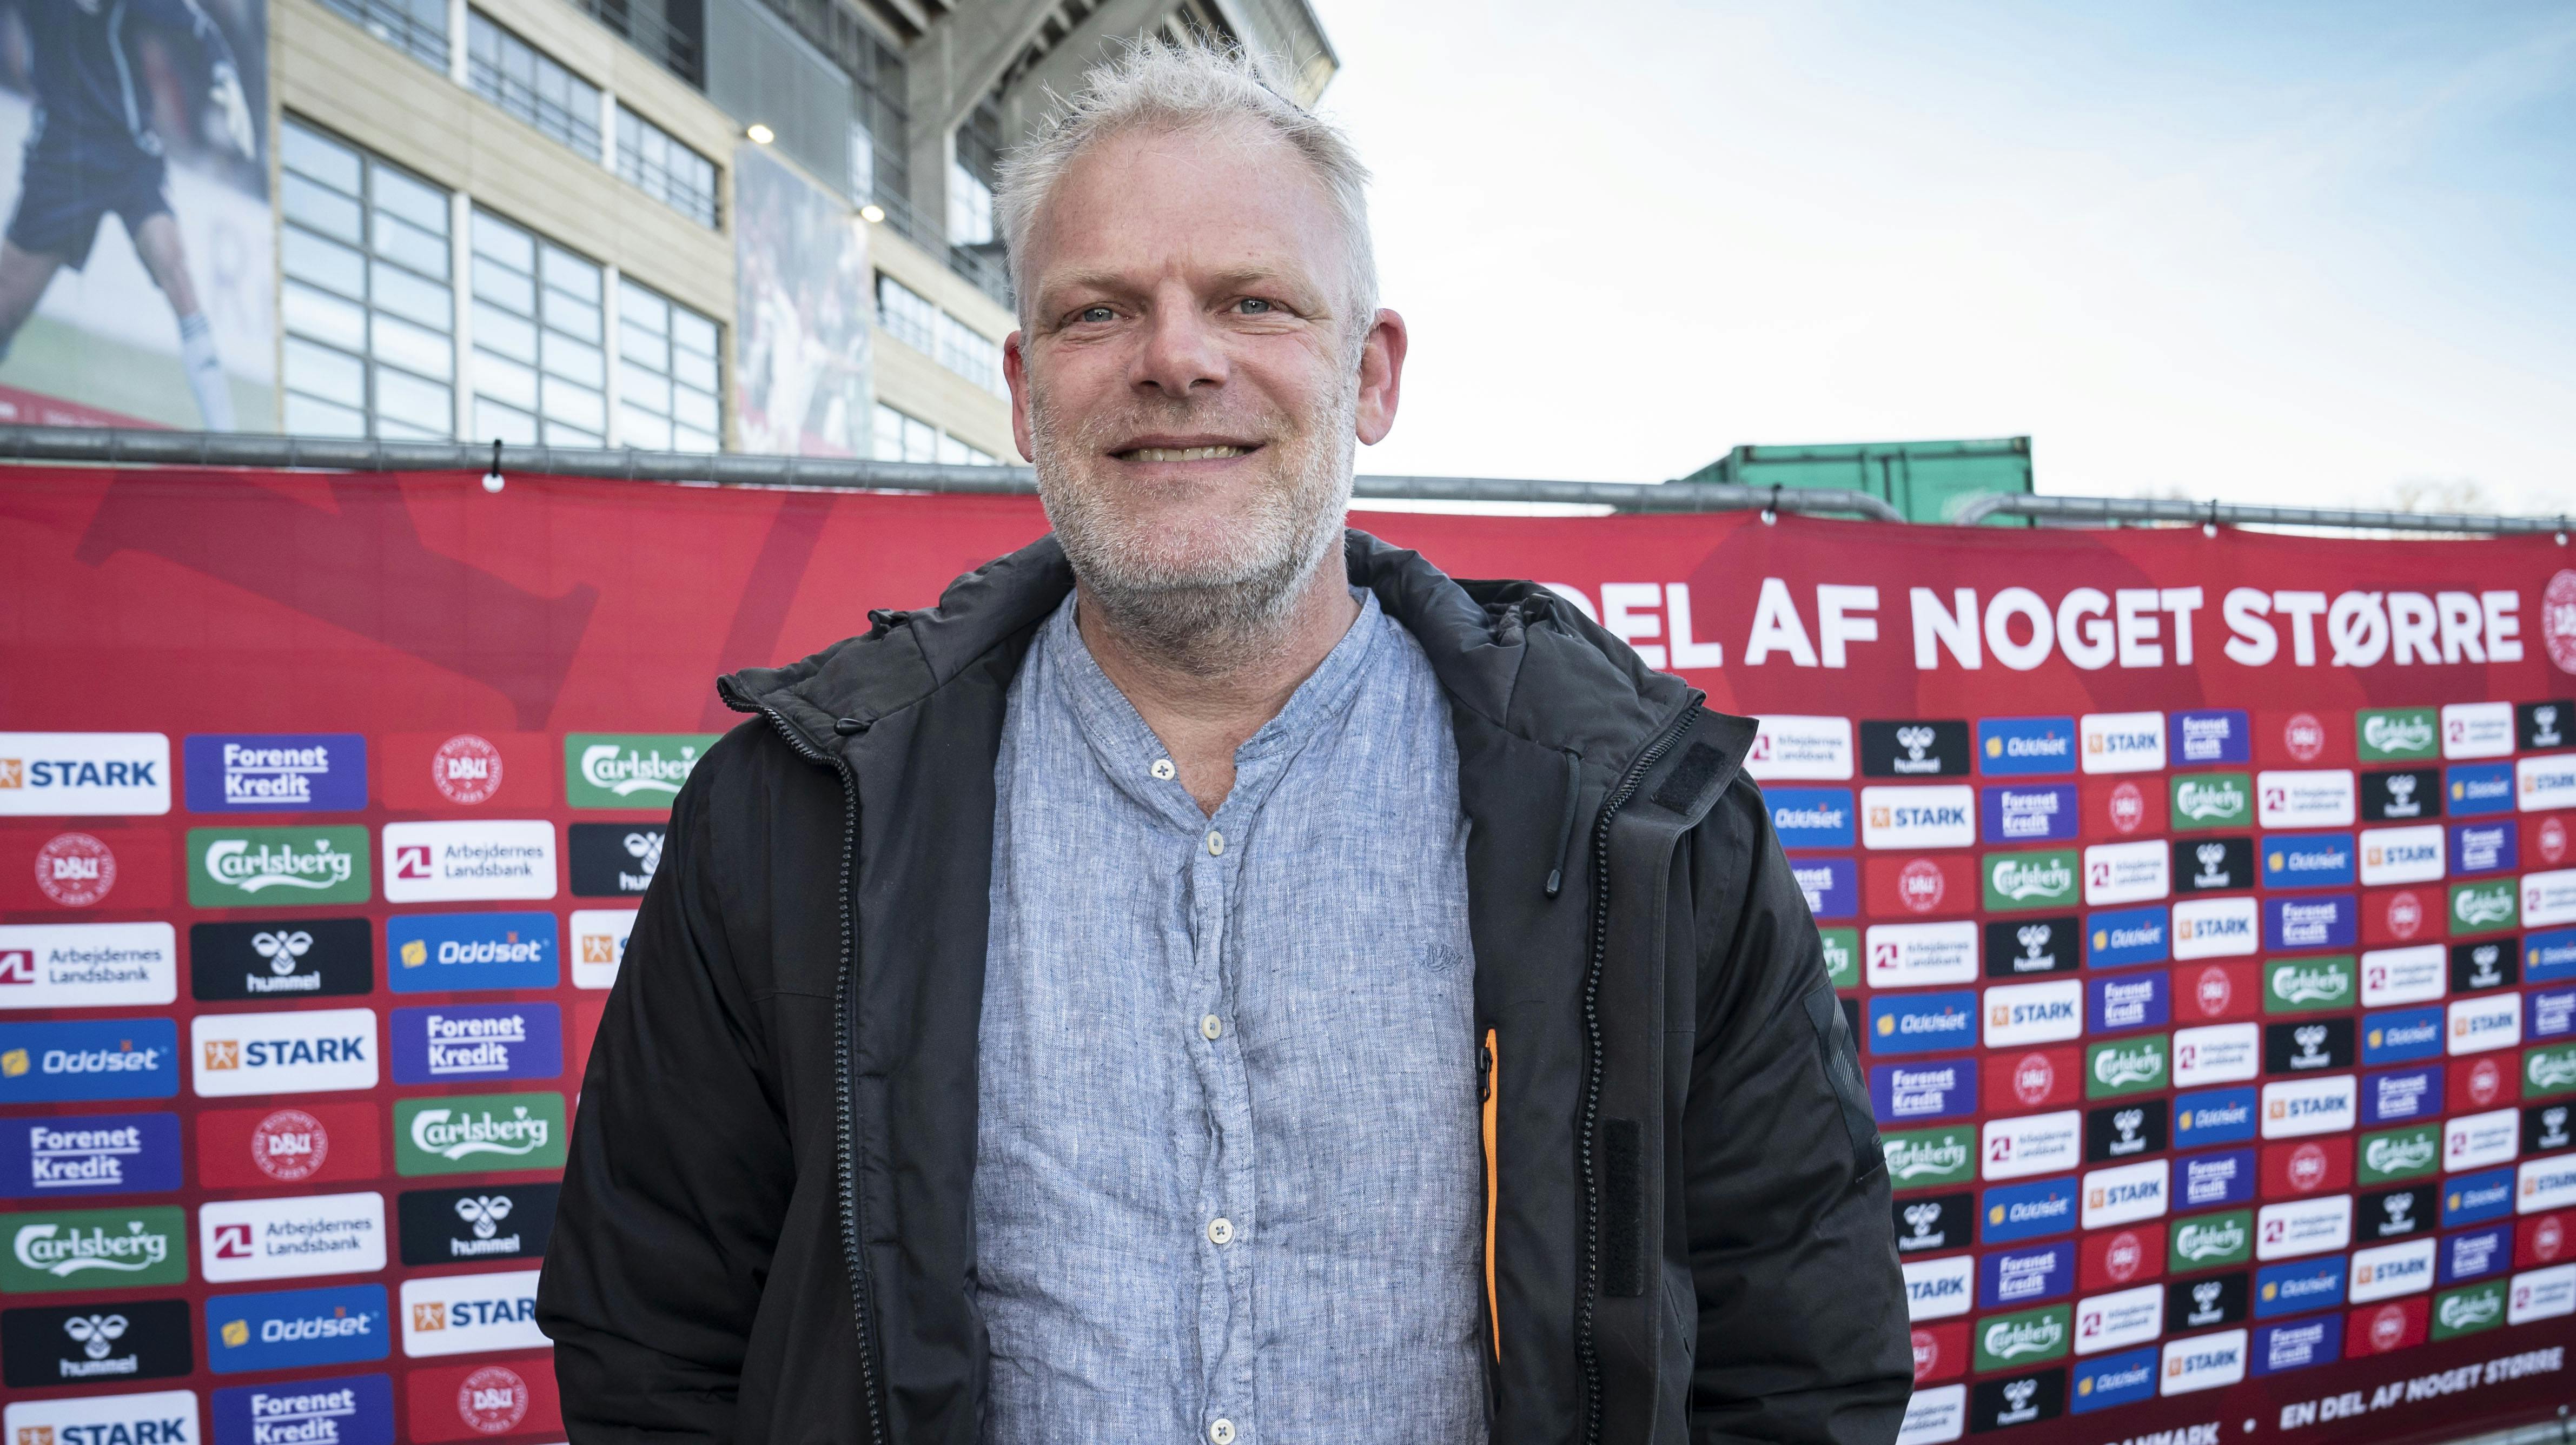 Søren Poppe var blandt andet til stede i Parken i marts, hvor Danmark spillede mod Serbien.